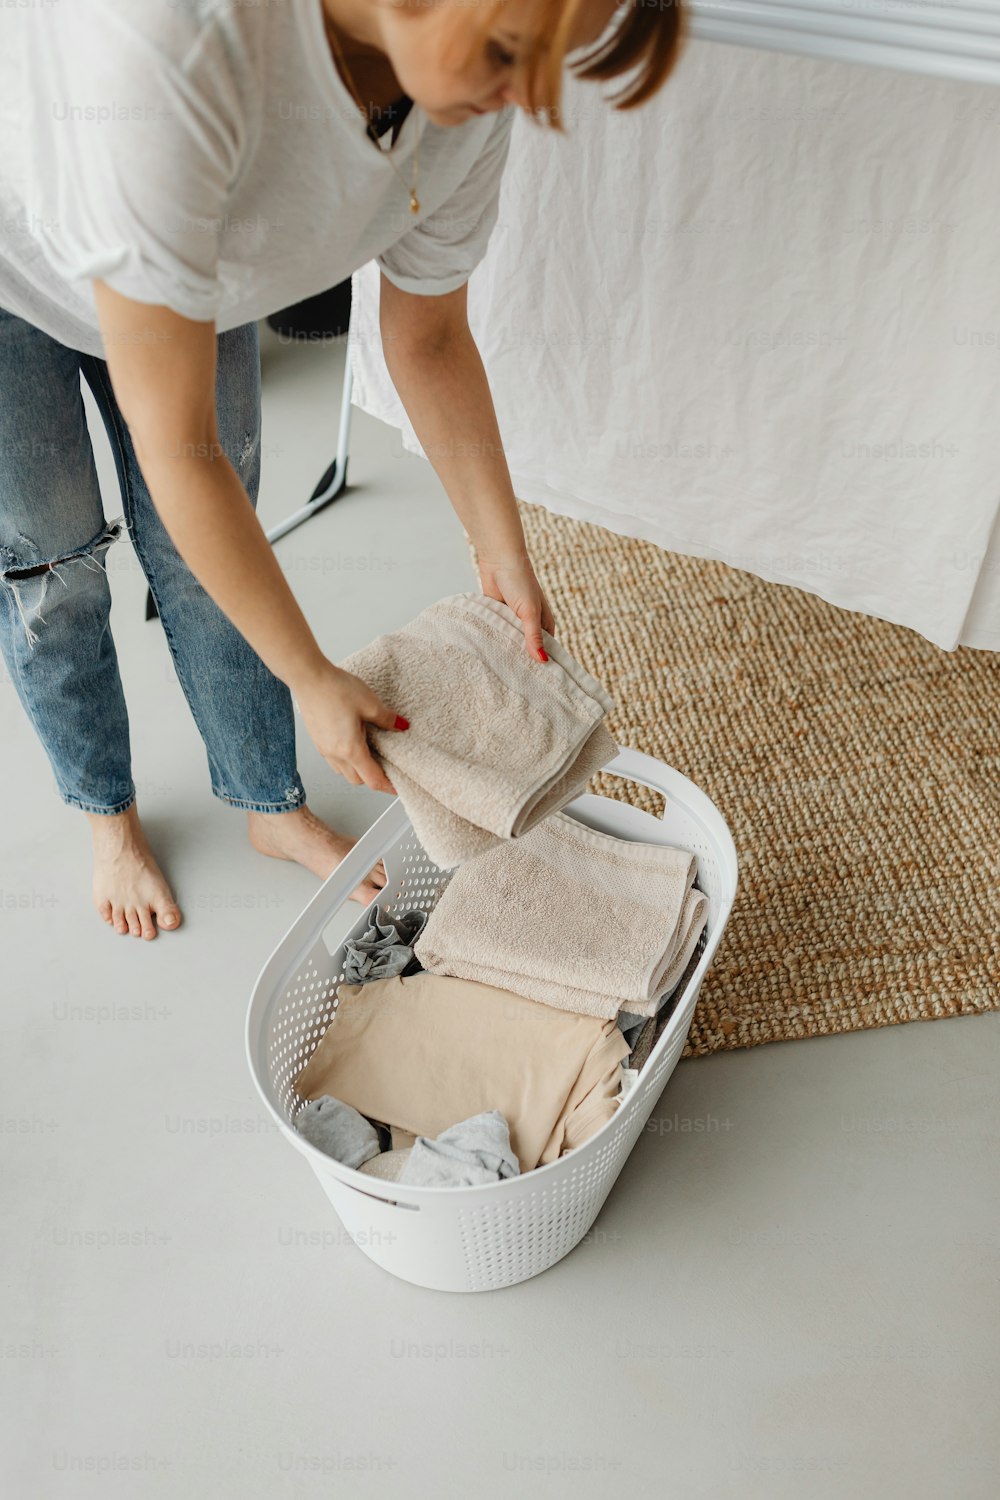 Eine Frau packt Kleidung in einem Korb aus